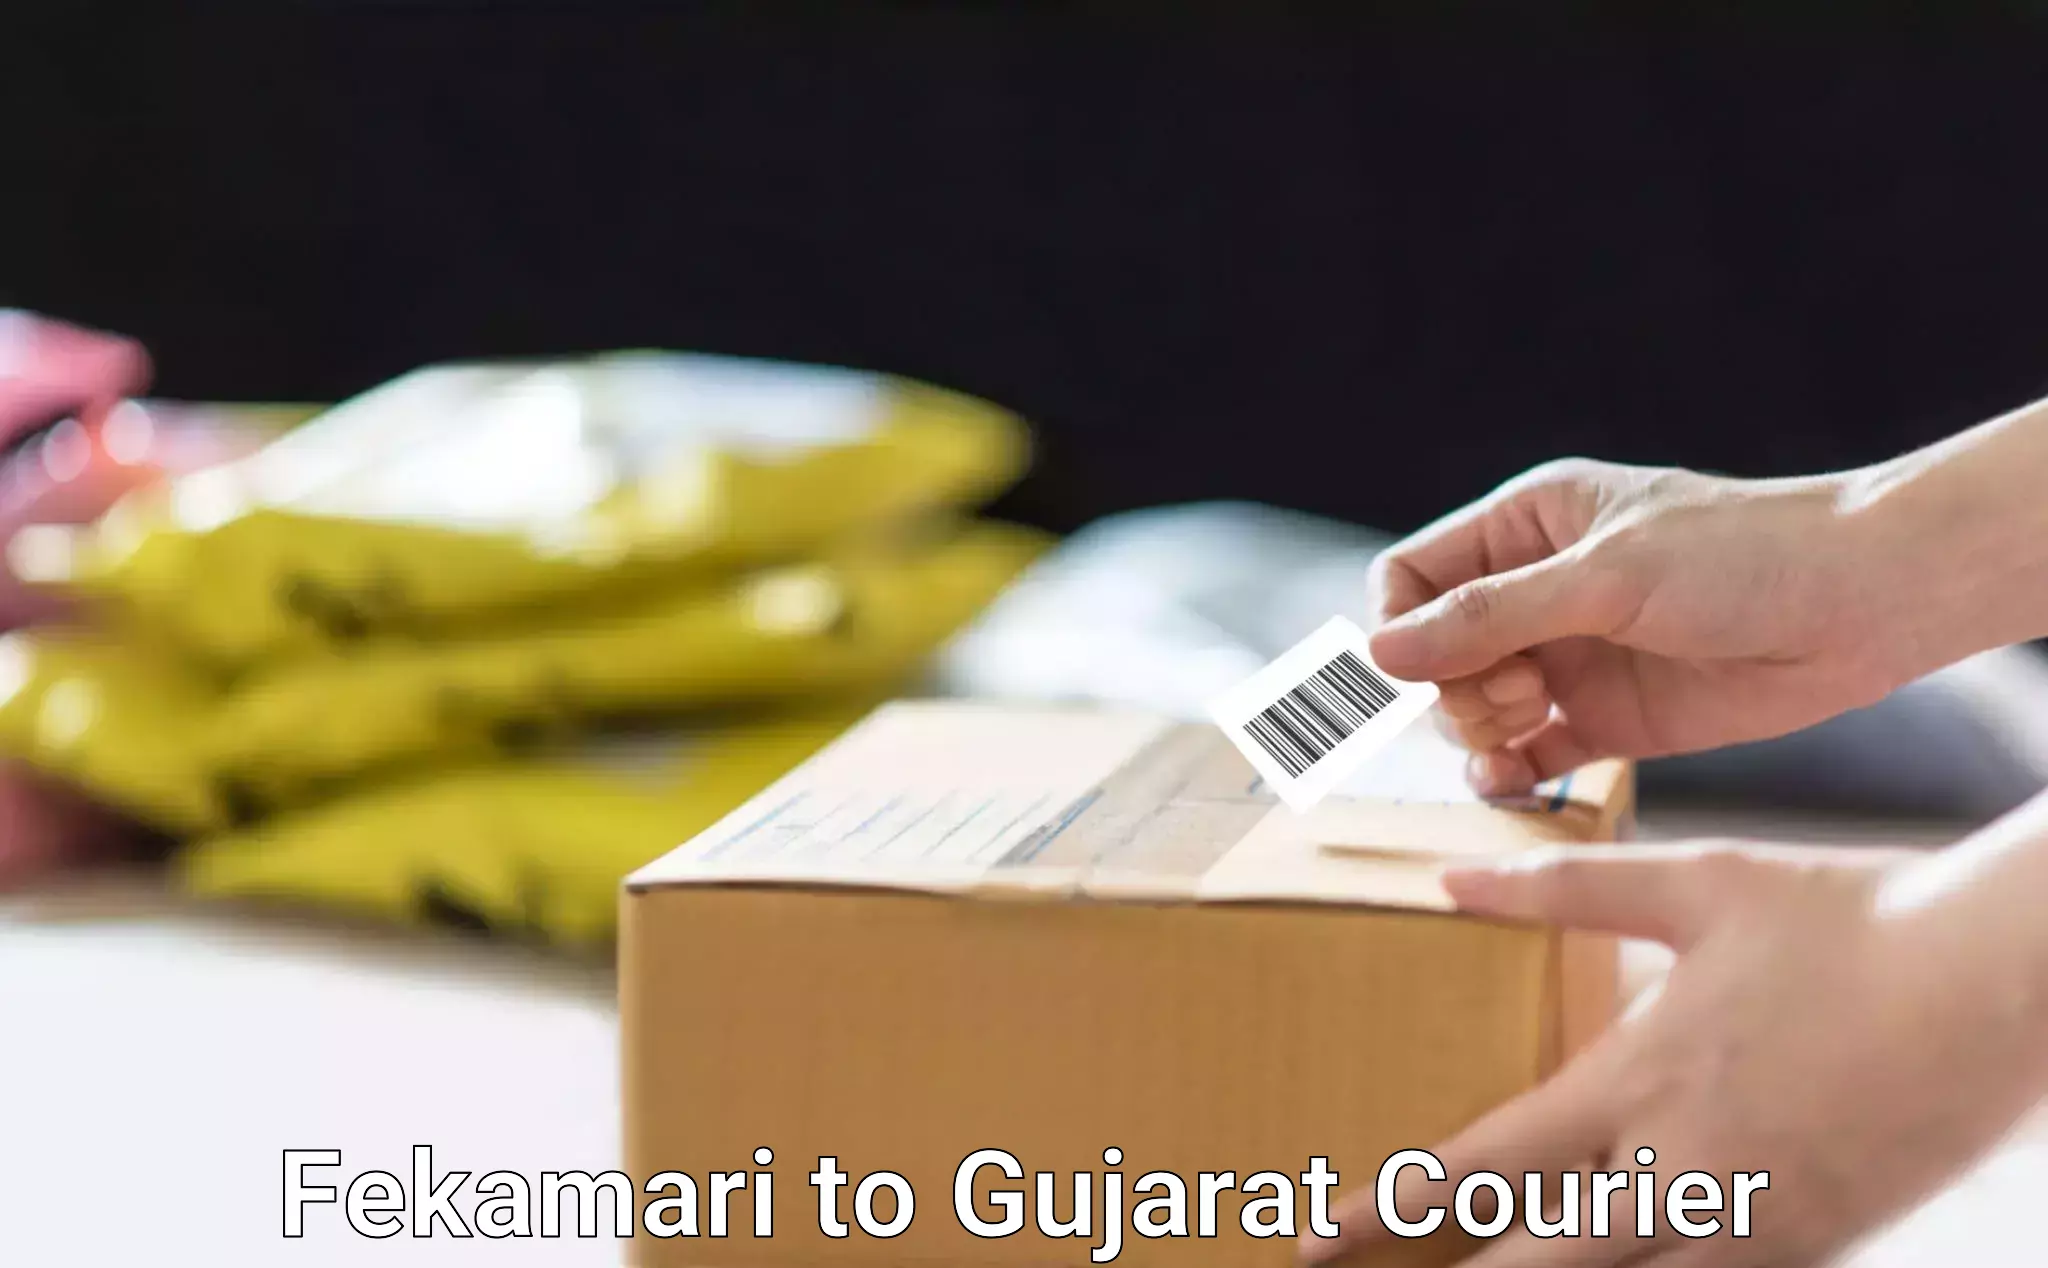 Professional courier handling Fekamari to Gujarat